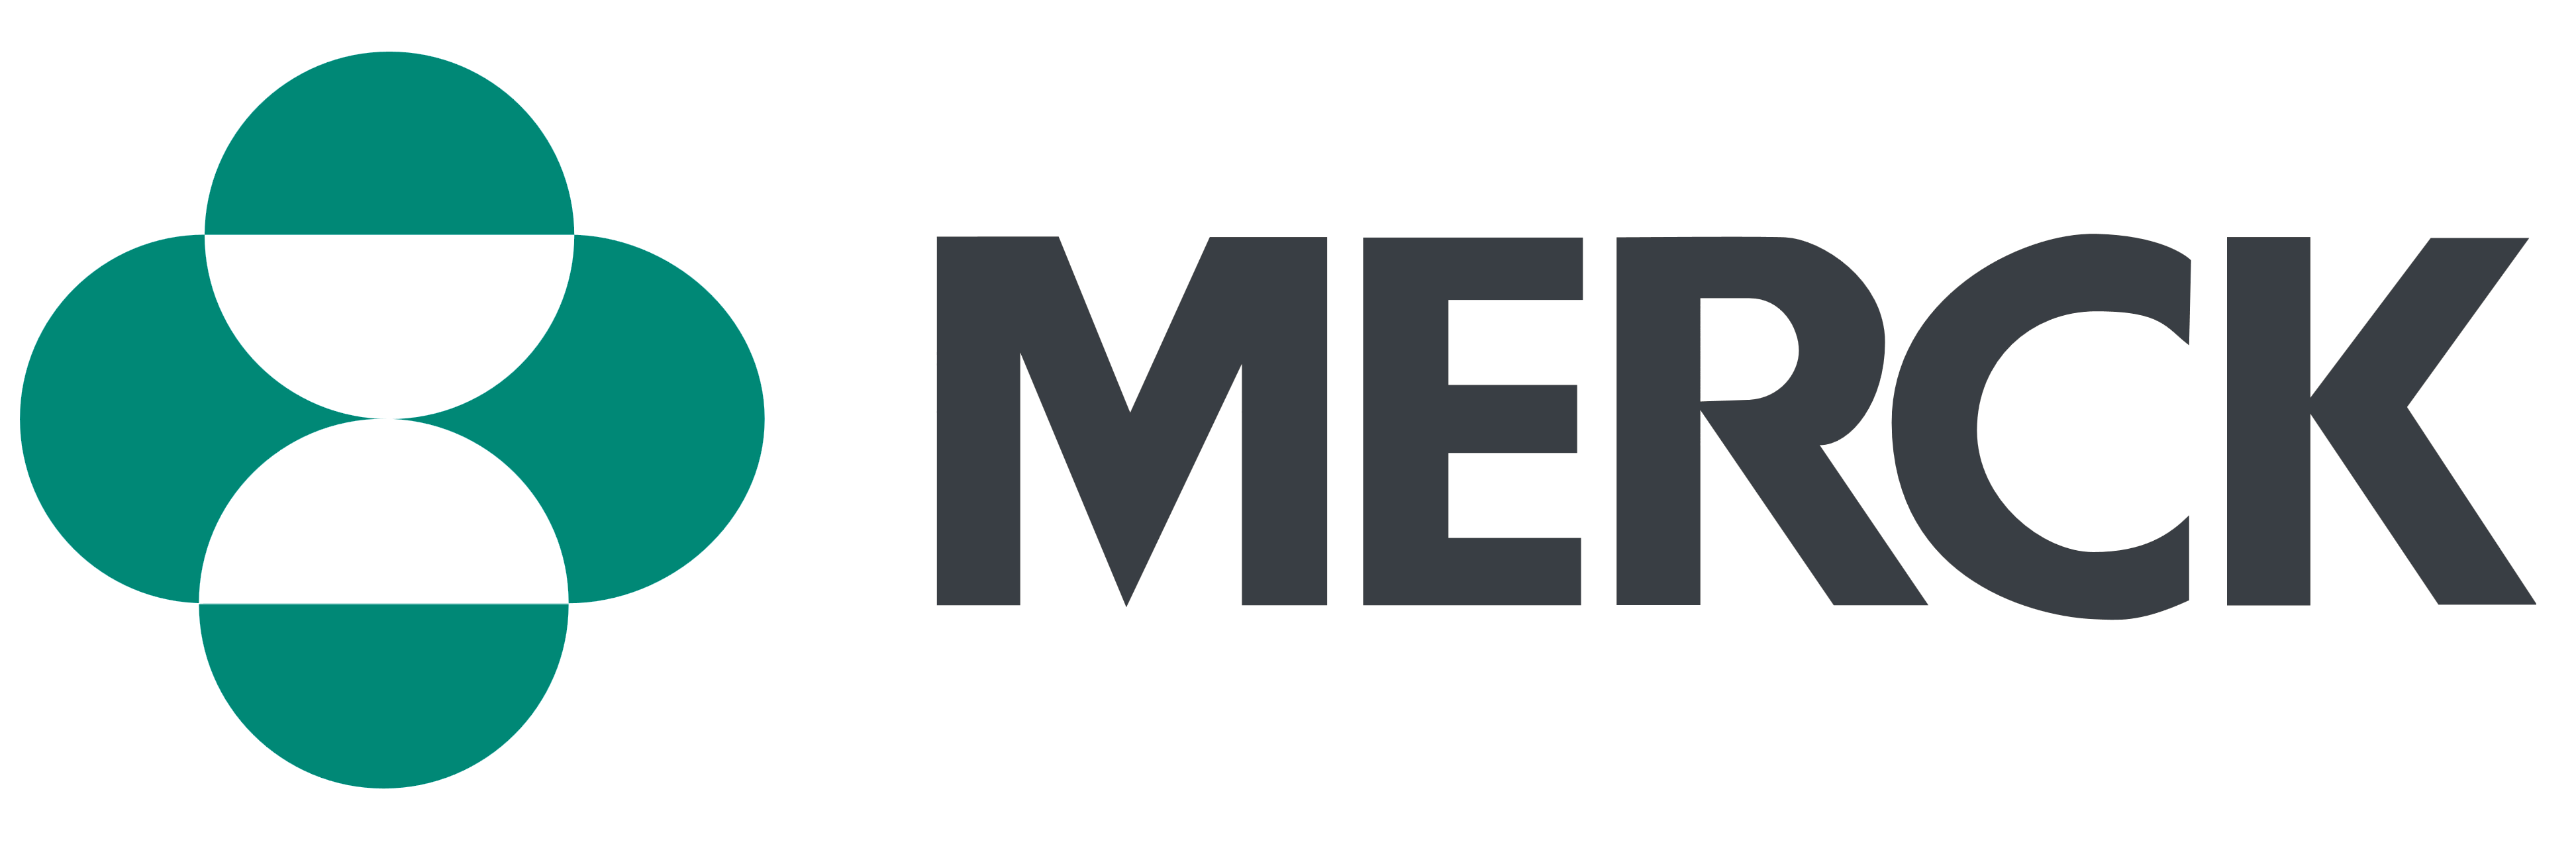 Merck logo, logotype